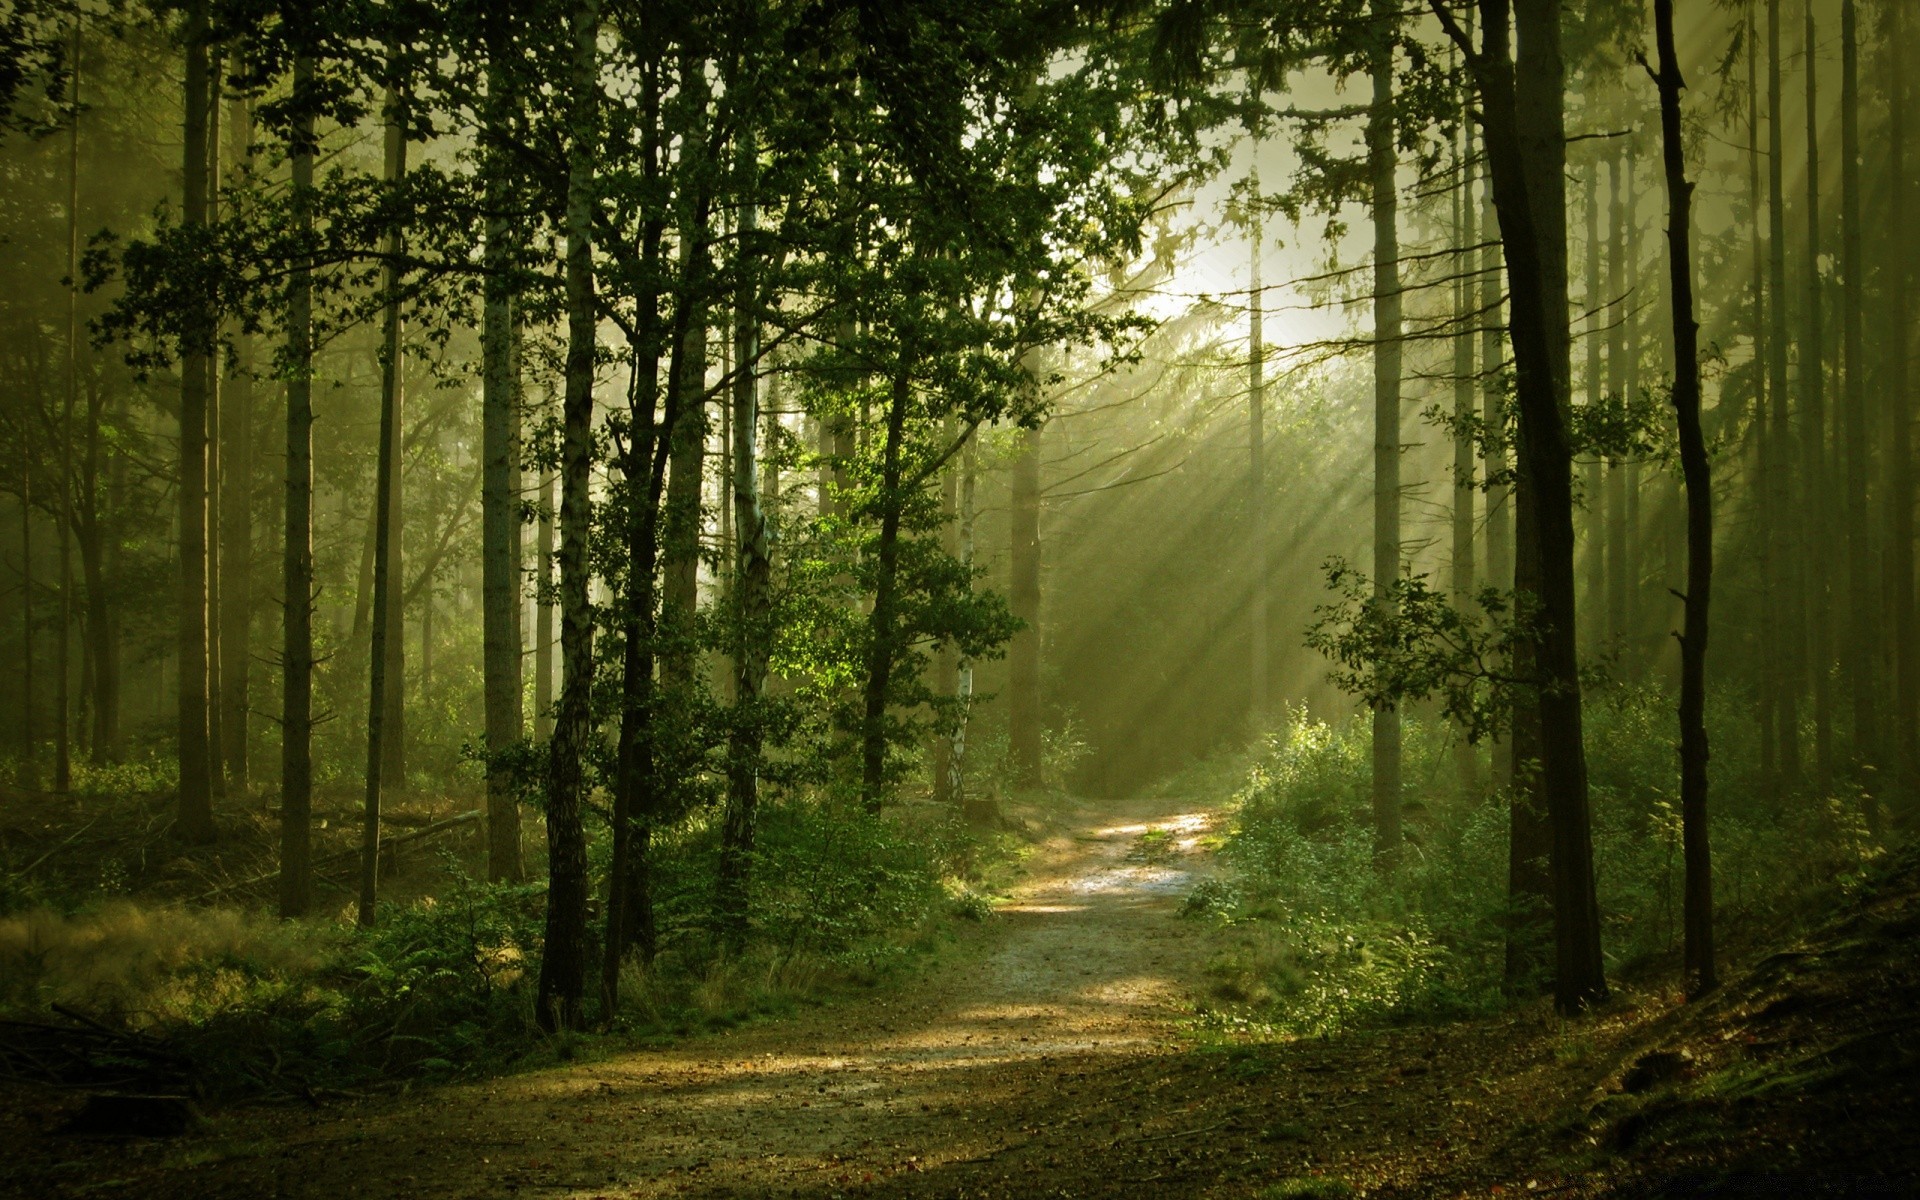 лес древесины пейзаж дерево туман туман природа рассвет солнце парк хорошую погоду лист свет дорога осень среды тайна руководство